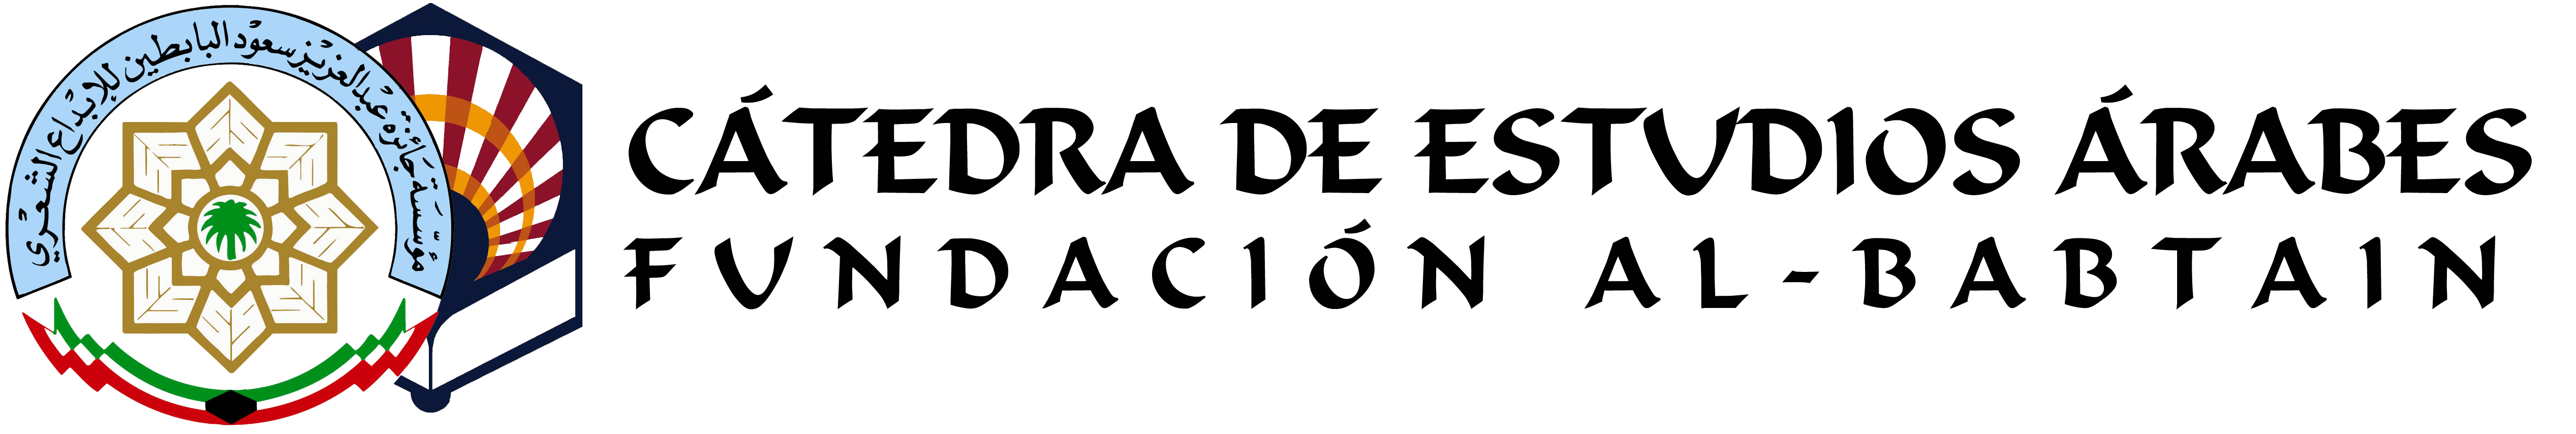 logo_3_catedra_al-babtainUCO